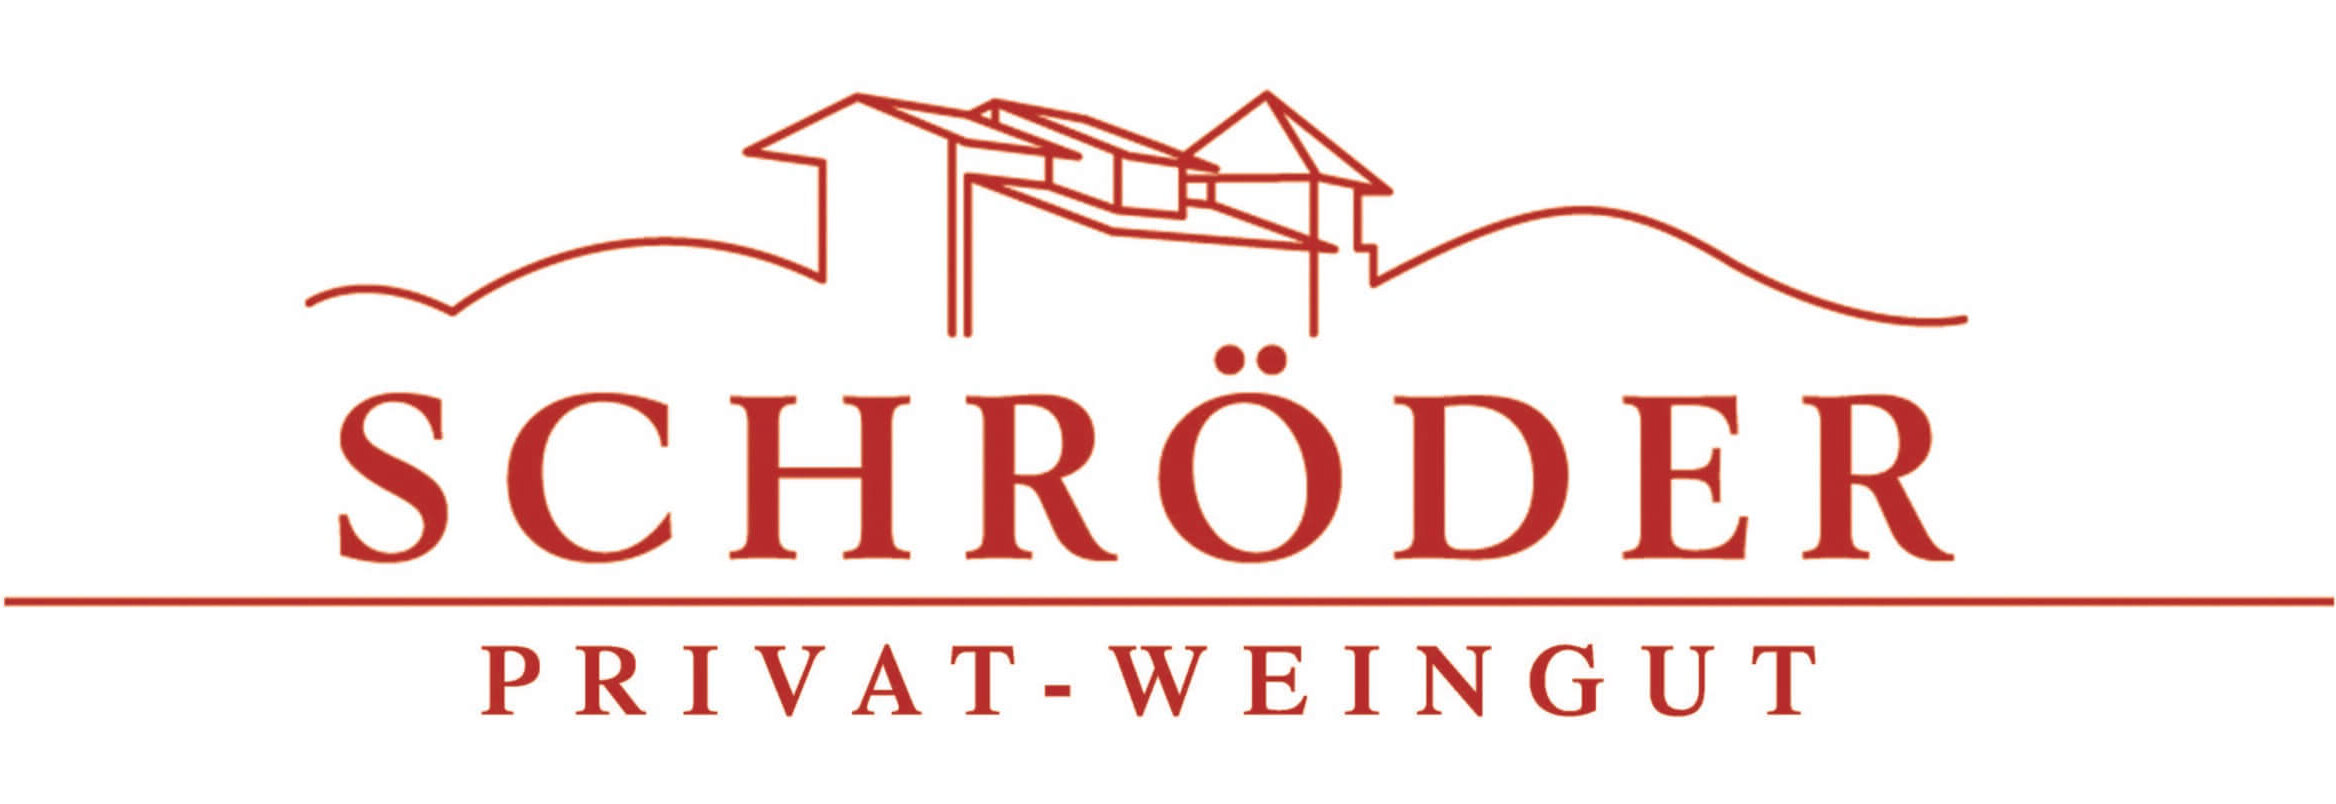 Privat-Weingut_Logo